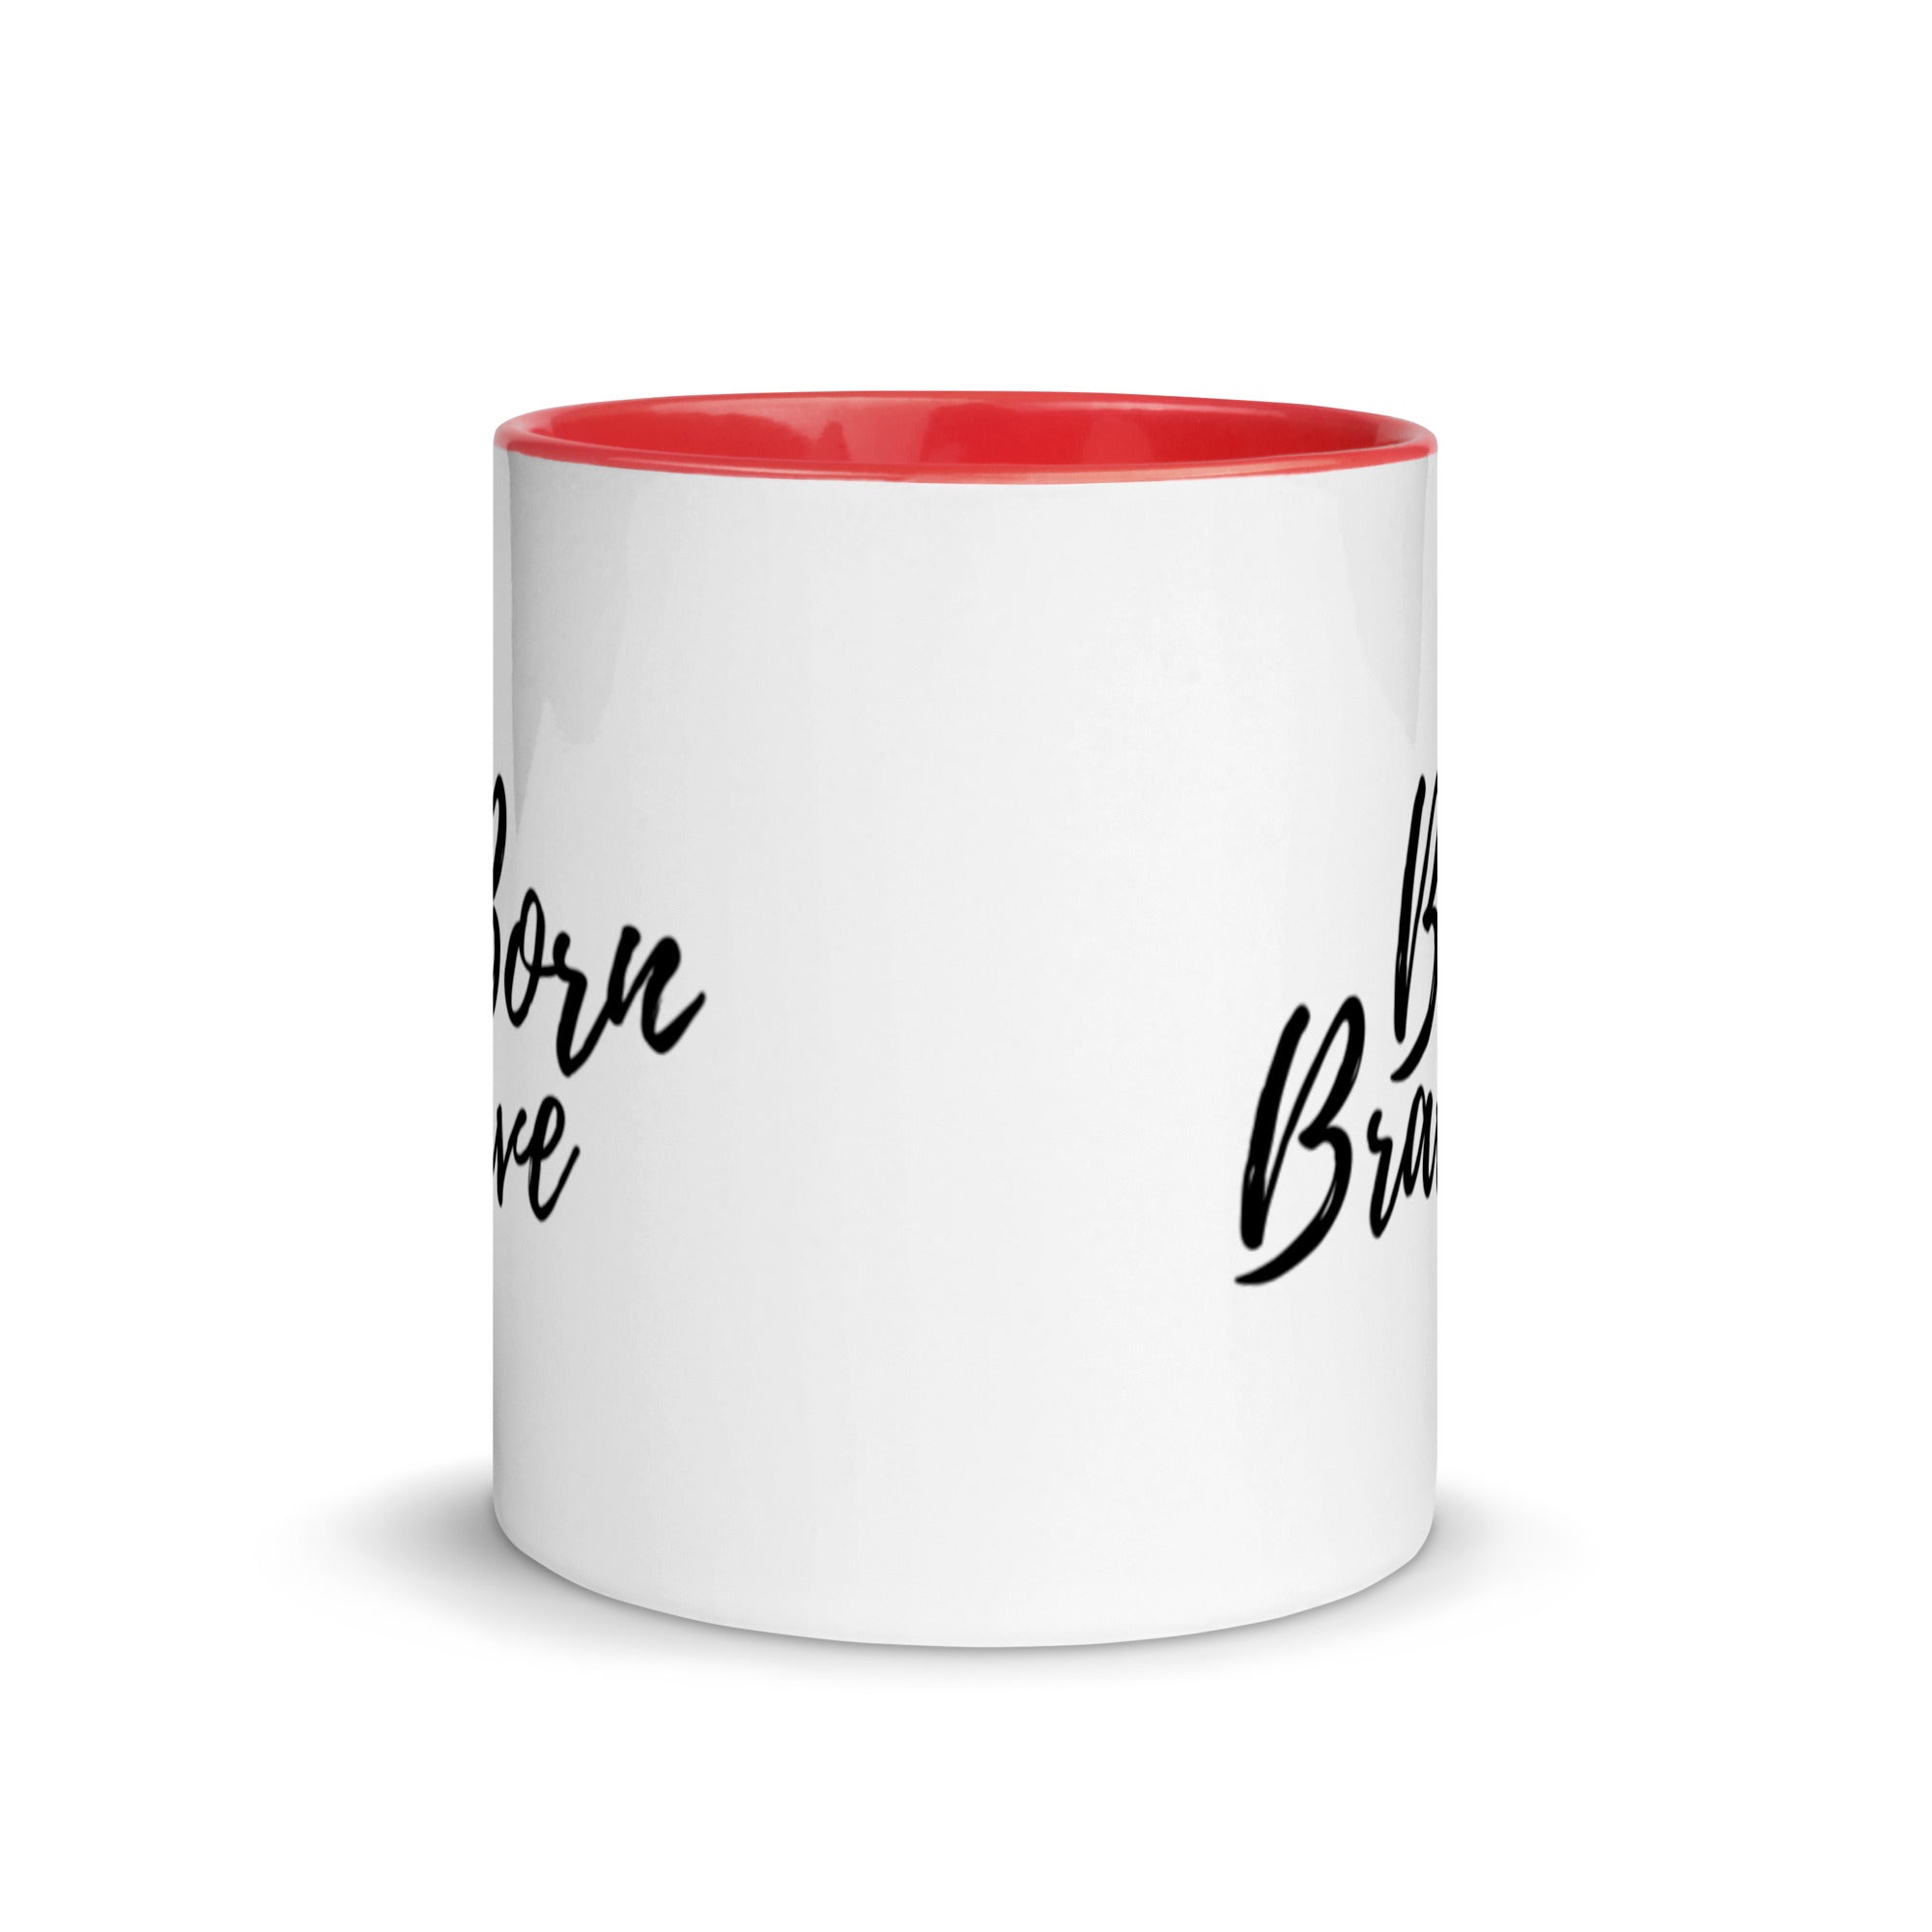 Born Brave - Mug with Color Inside